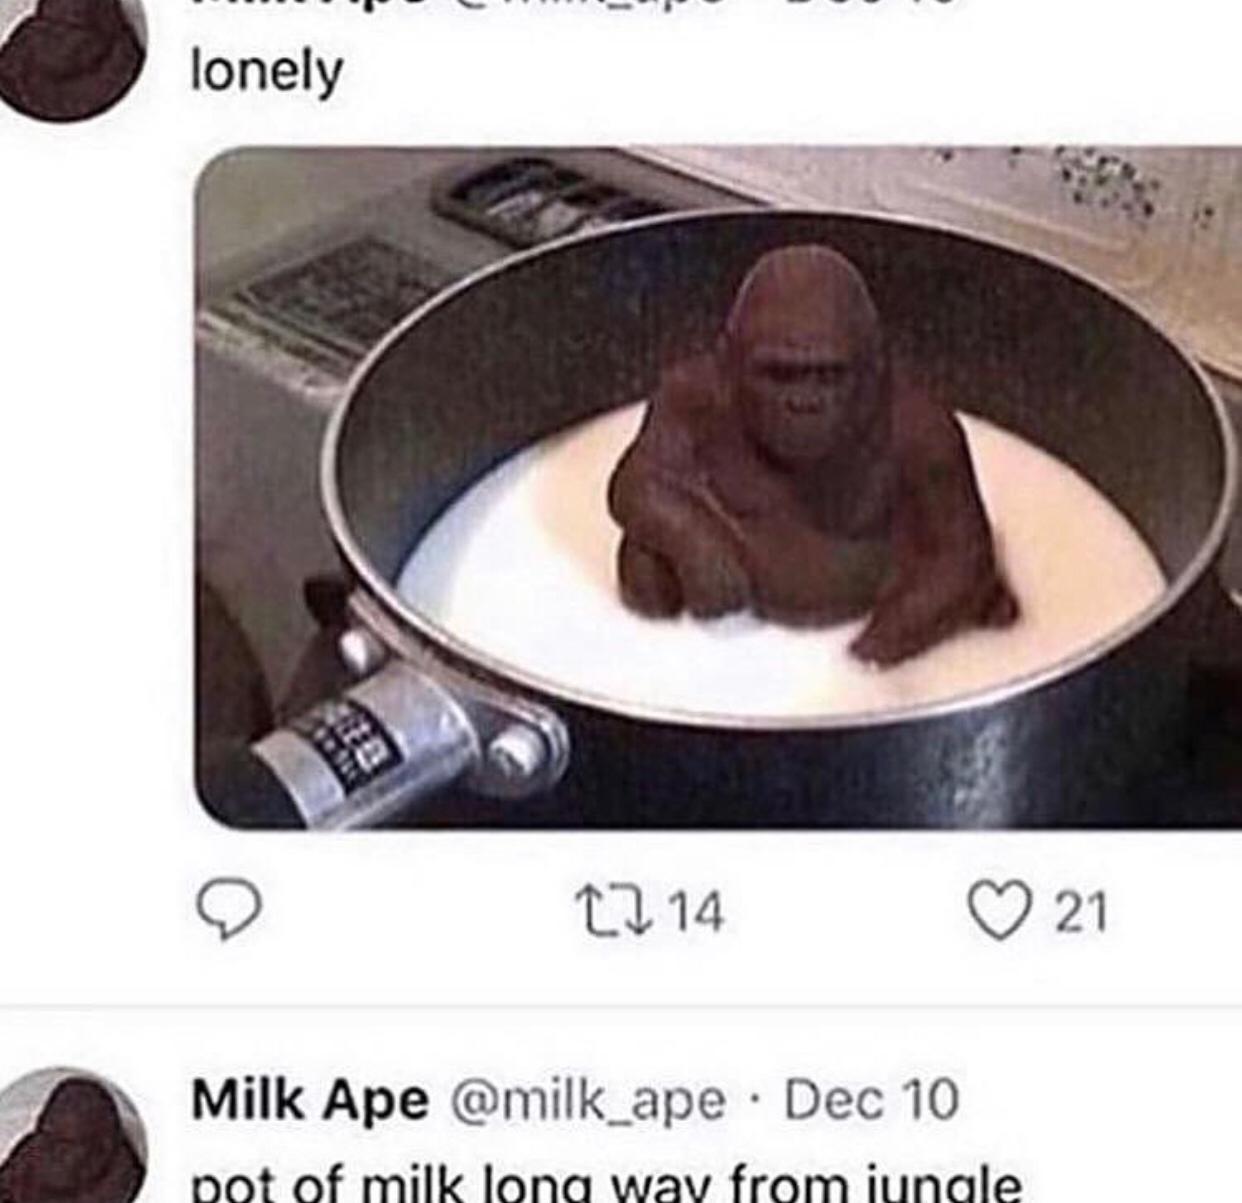 Cringe,  cringe memes Cringe,  text: lonely @milk_ape • Dec 10 Milk Ape 0 21 